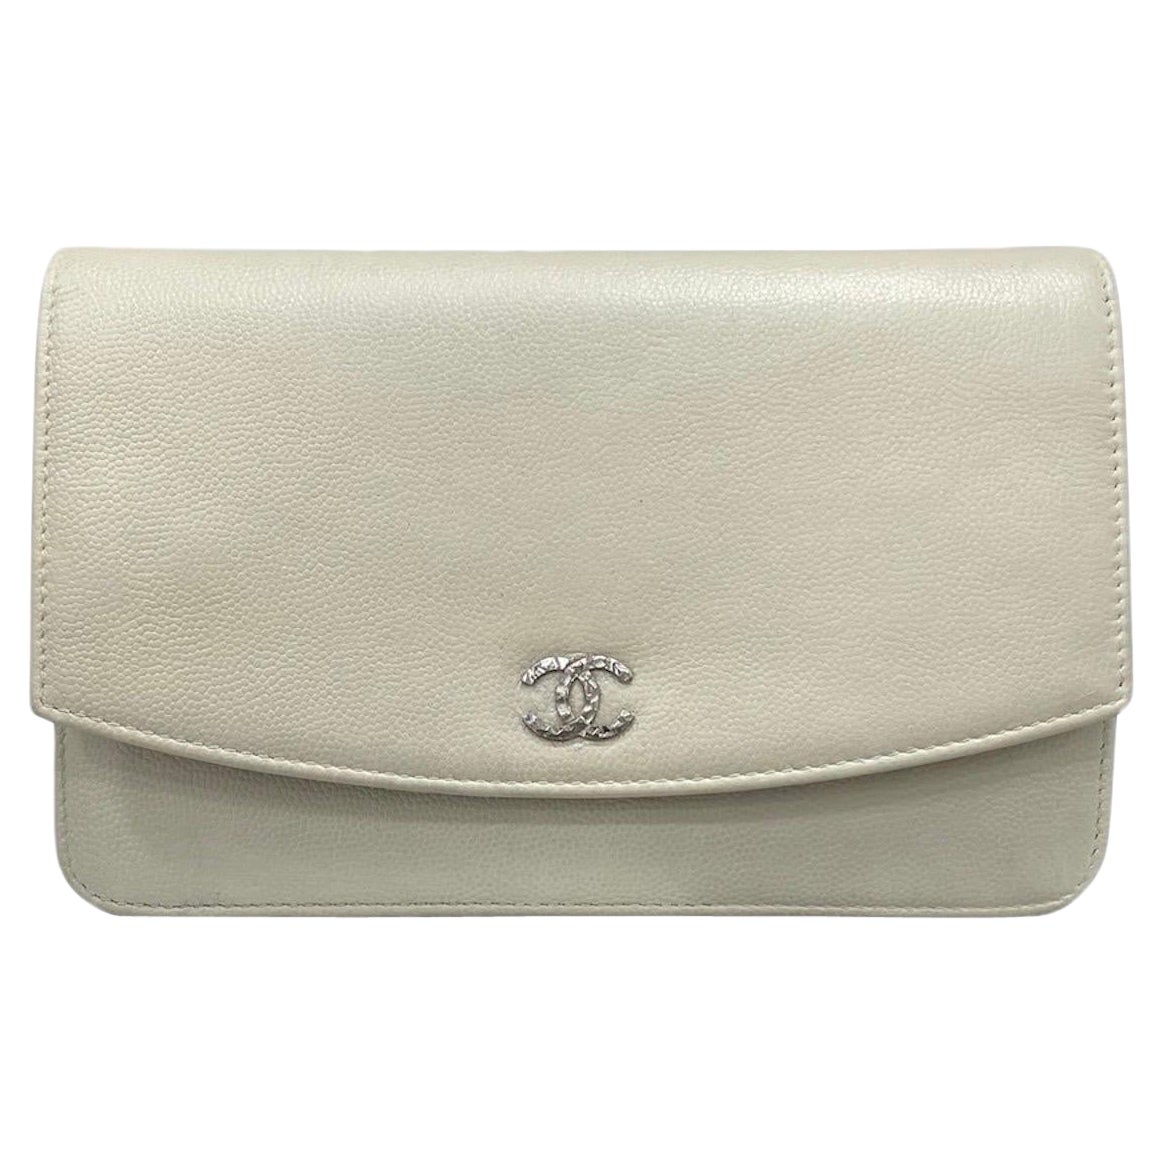 Chanel Woc White Shoulder Bag